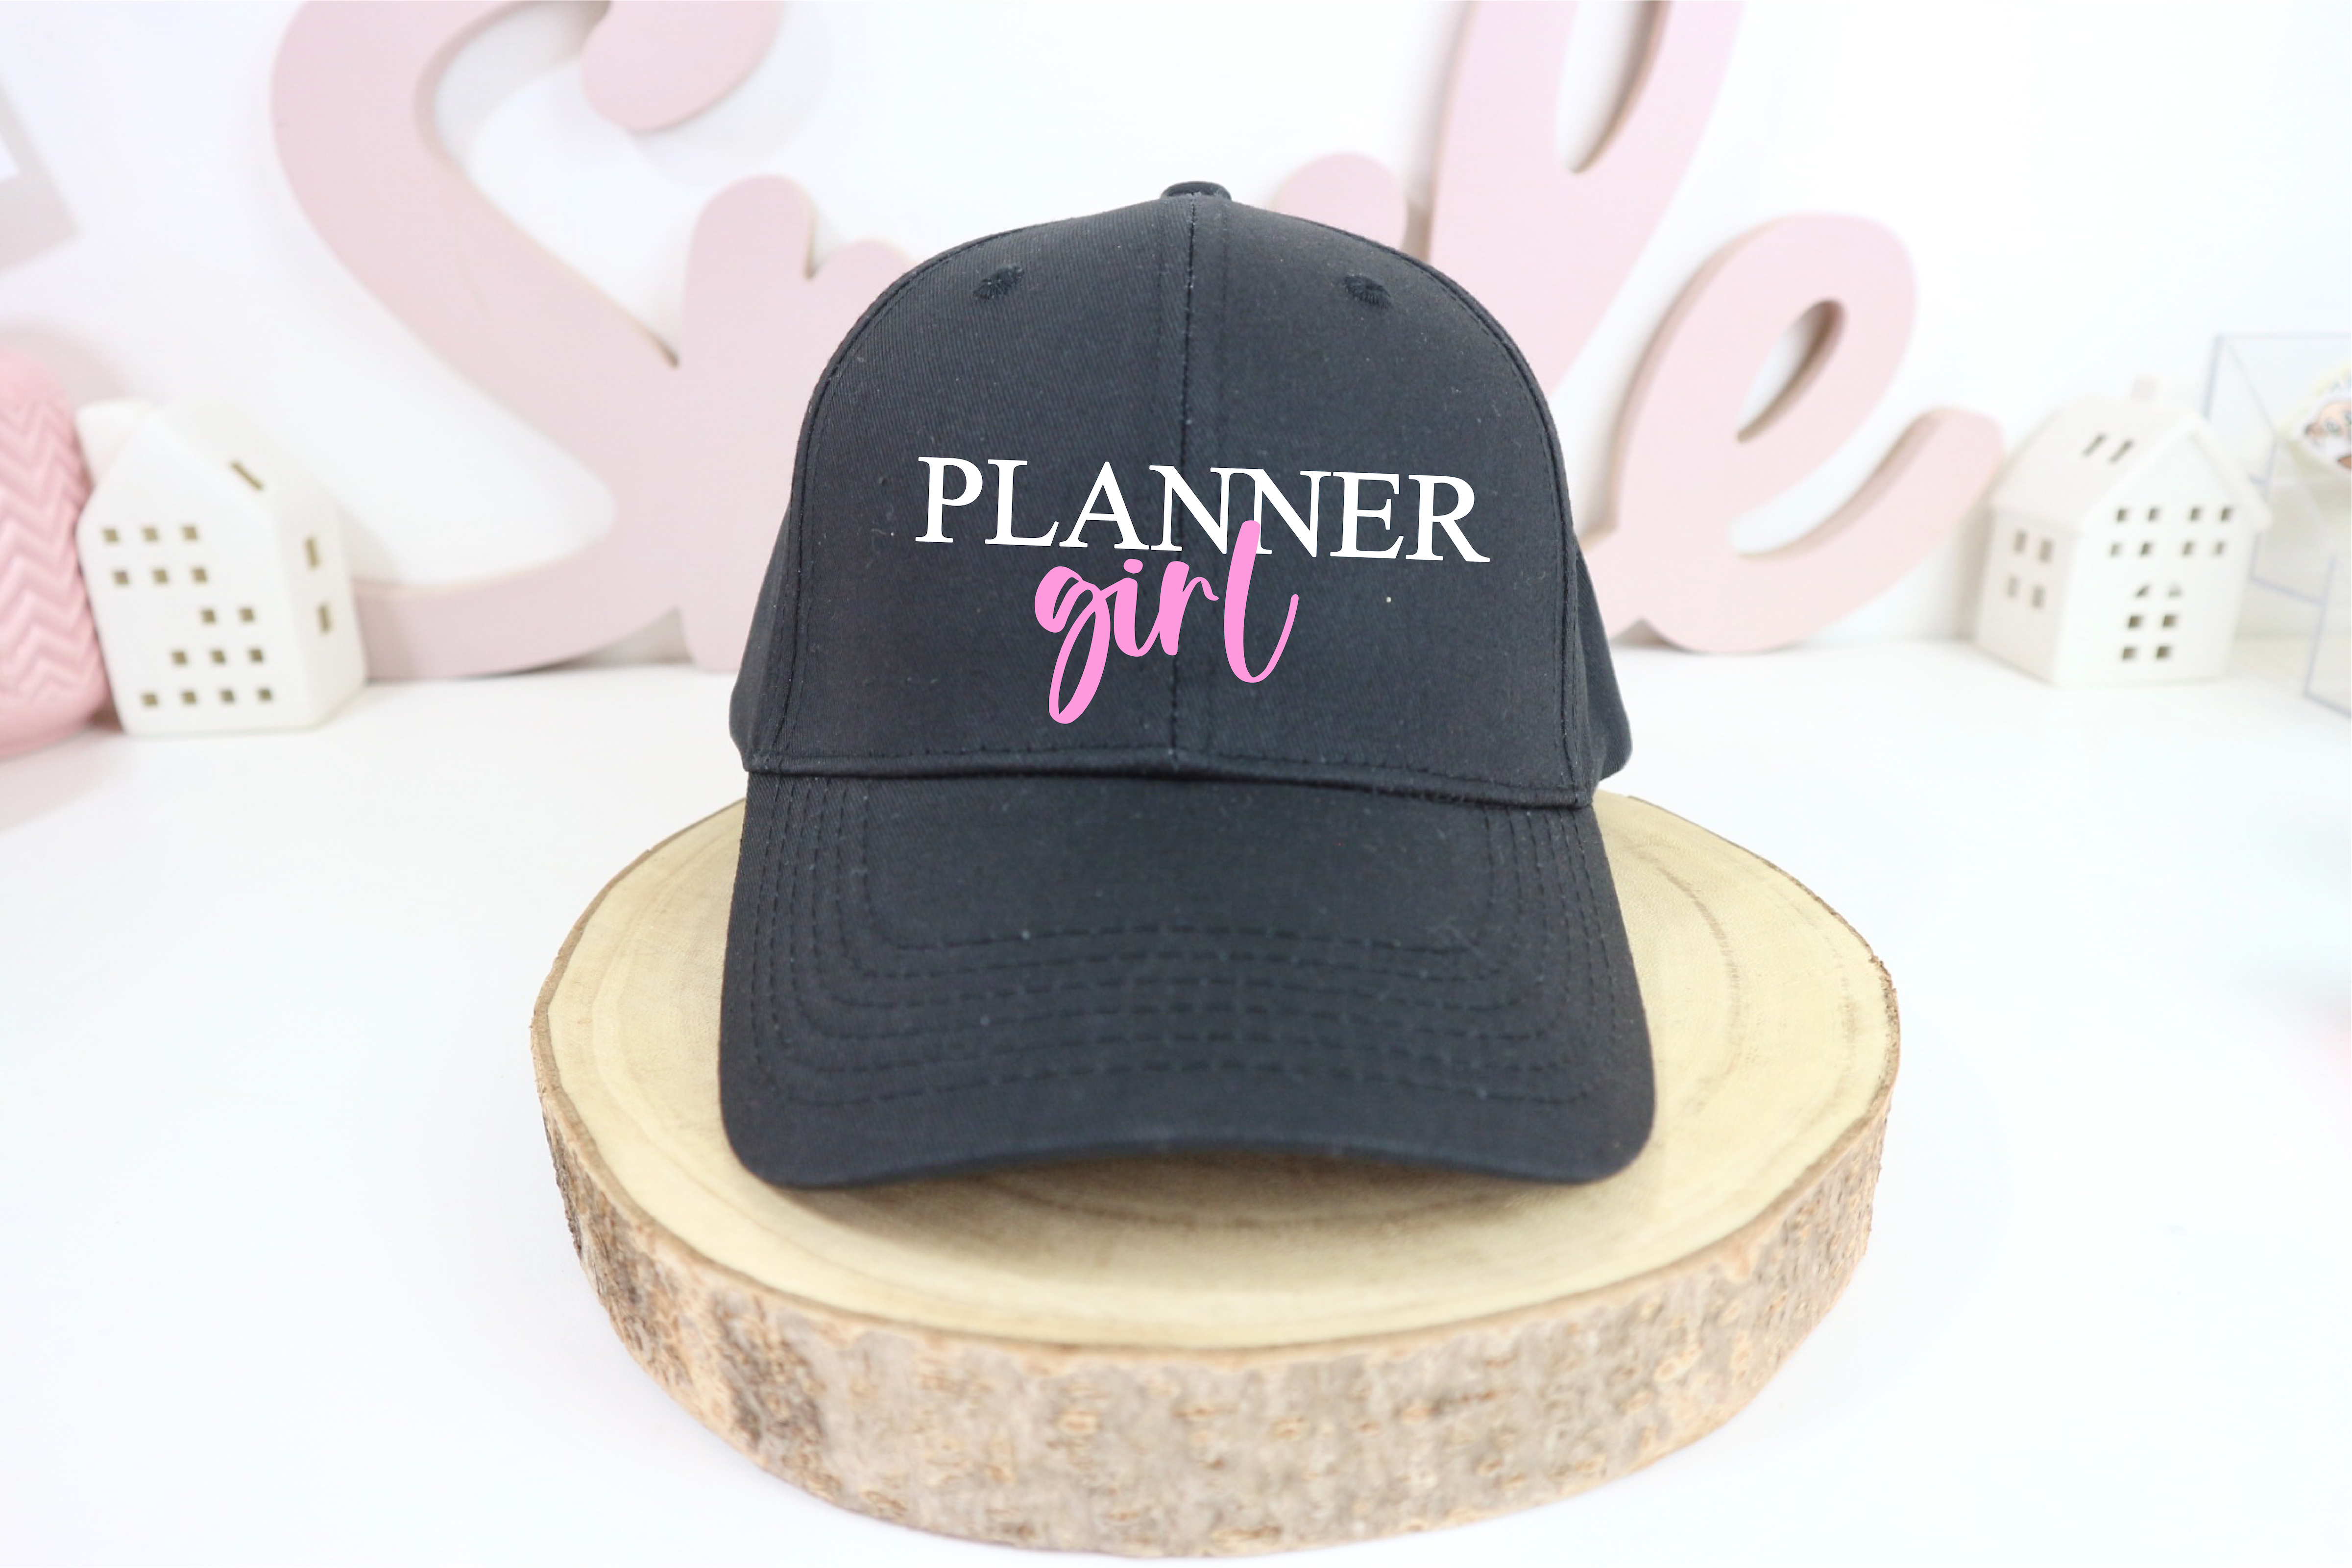 Planner girl